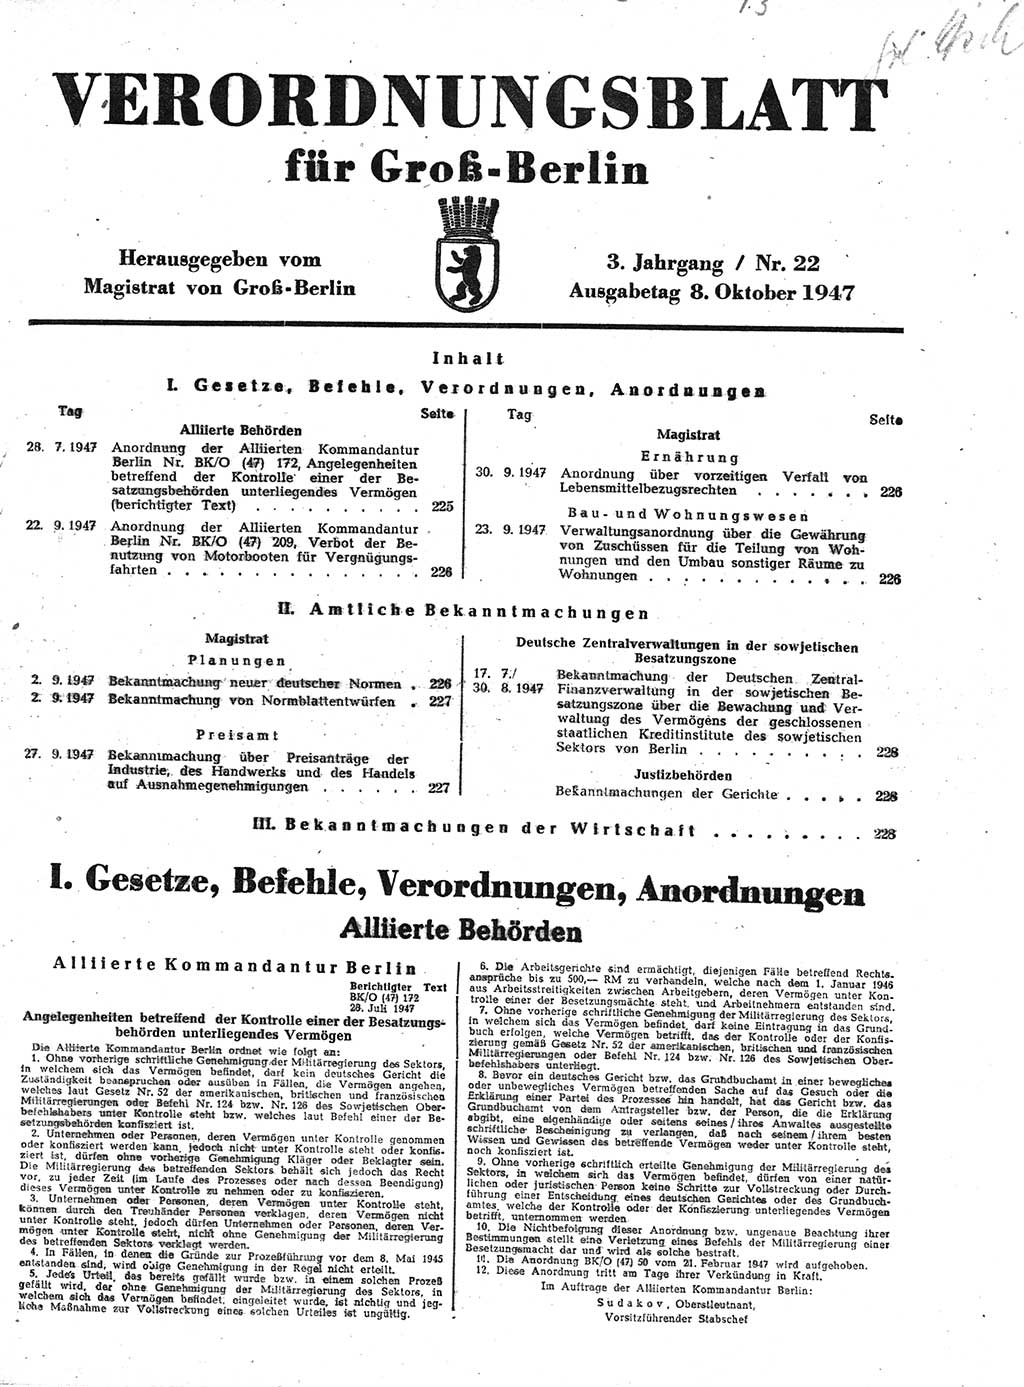 Verordnungsblatt (VOBl.) für Groß-Berlin 1947, Seite 225 (VOBl. Bln. 1947, S. 225)